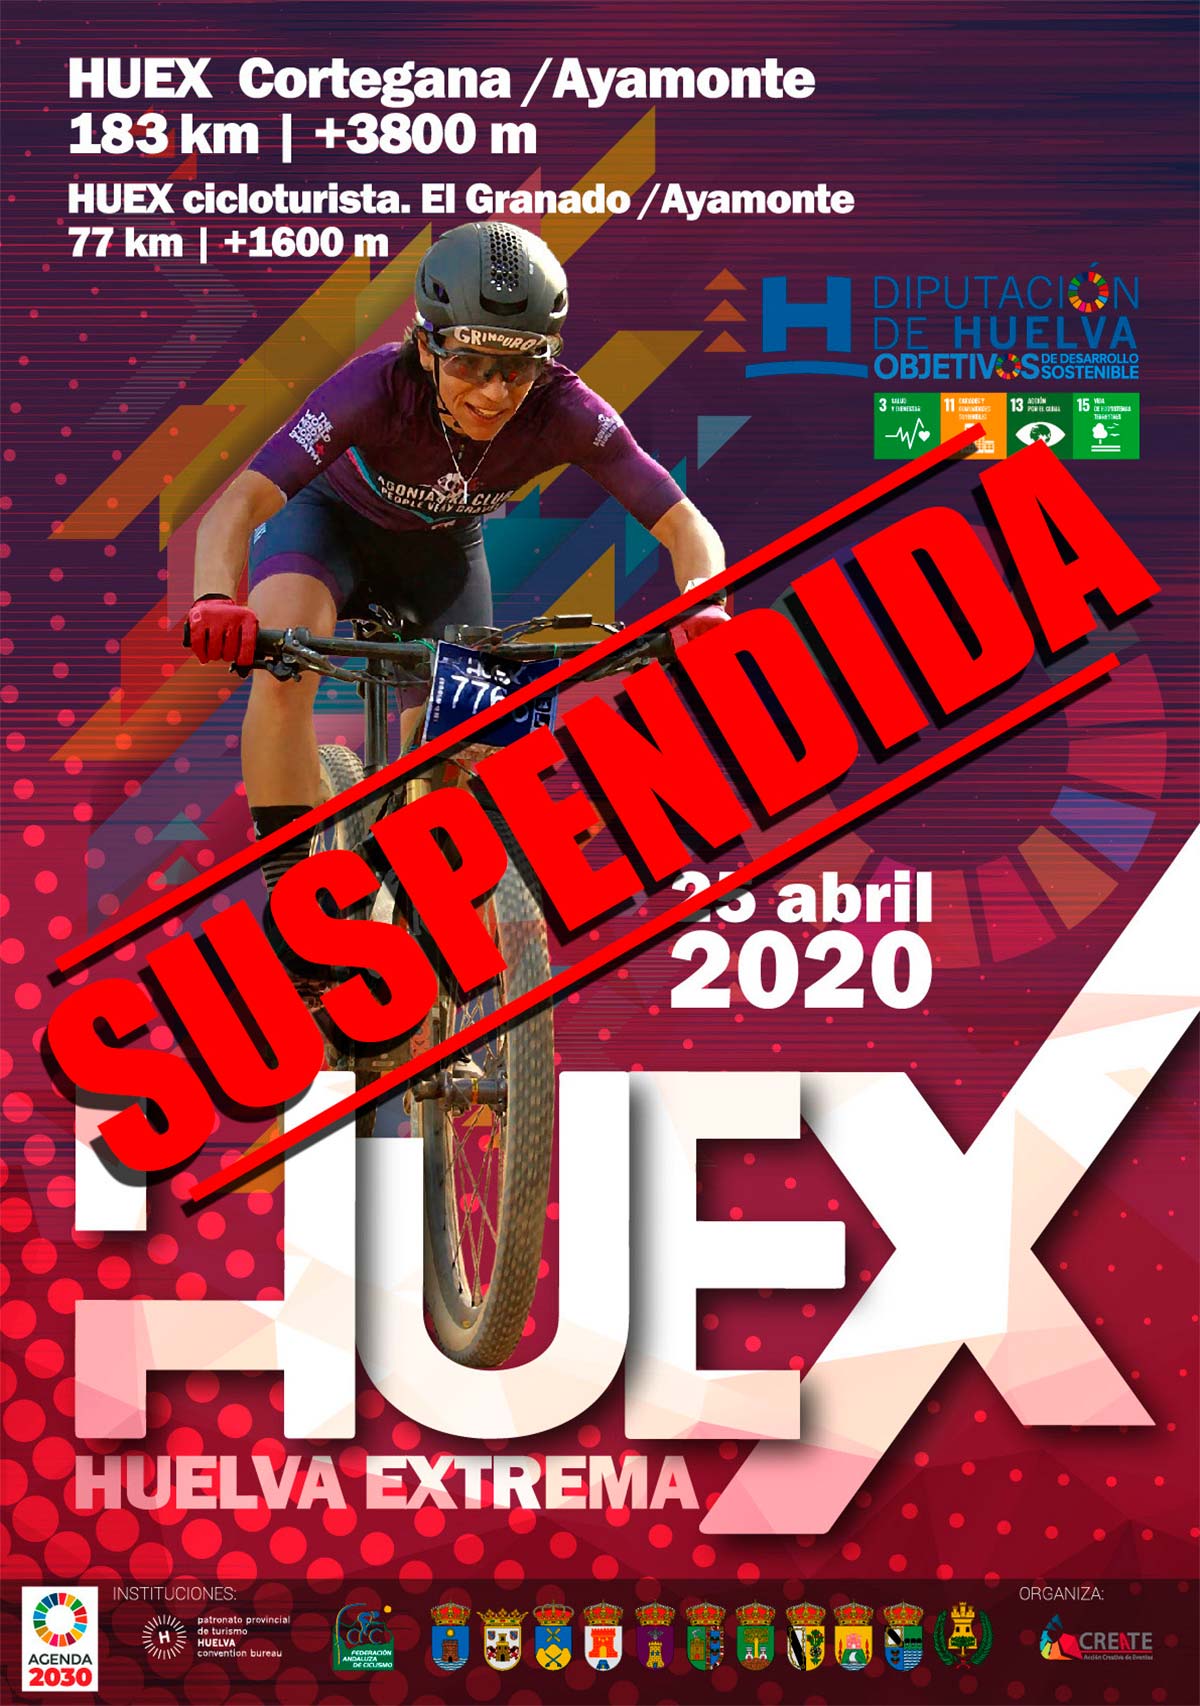 En TodoMountainBike: La Huelva Extrema 2020 se suspende, no habrá edición hasta el próximo año